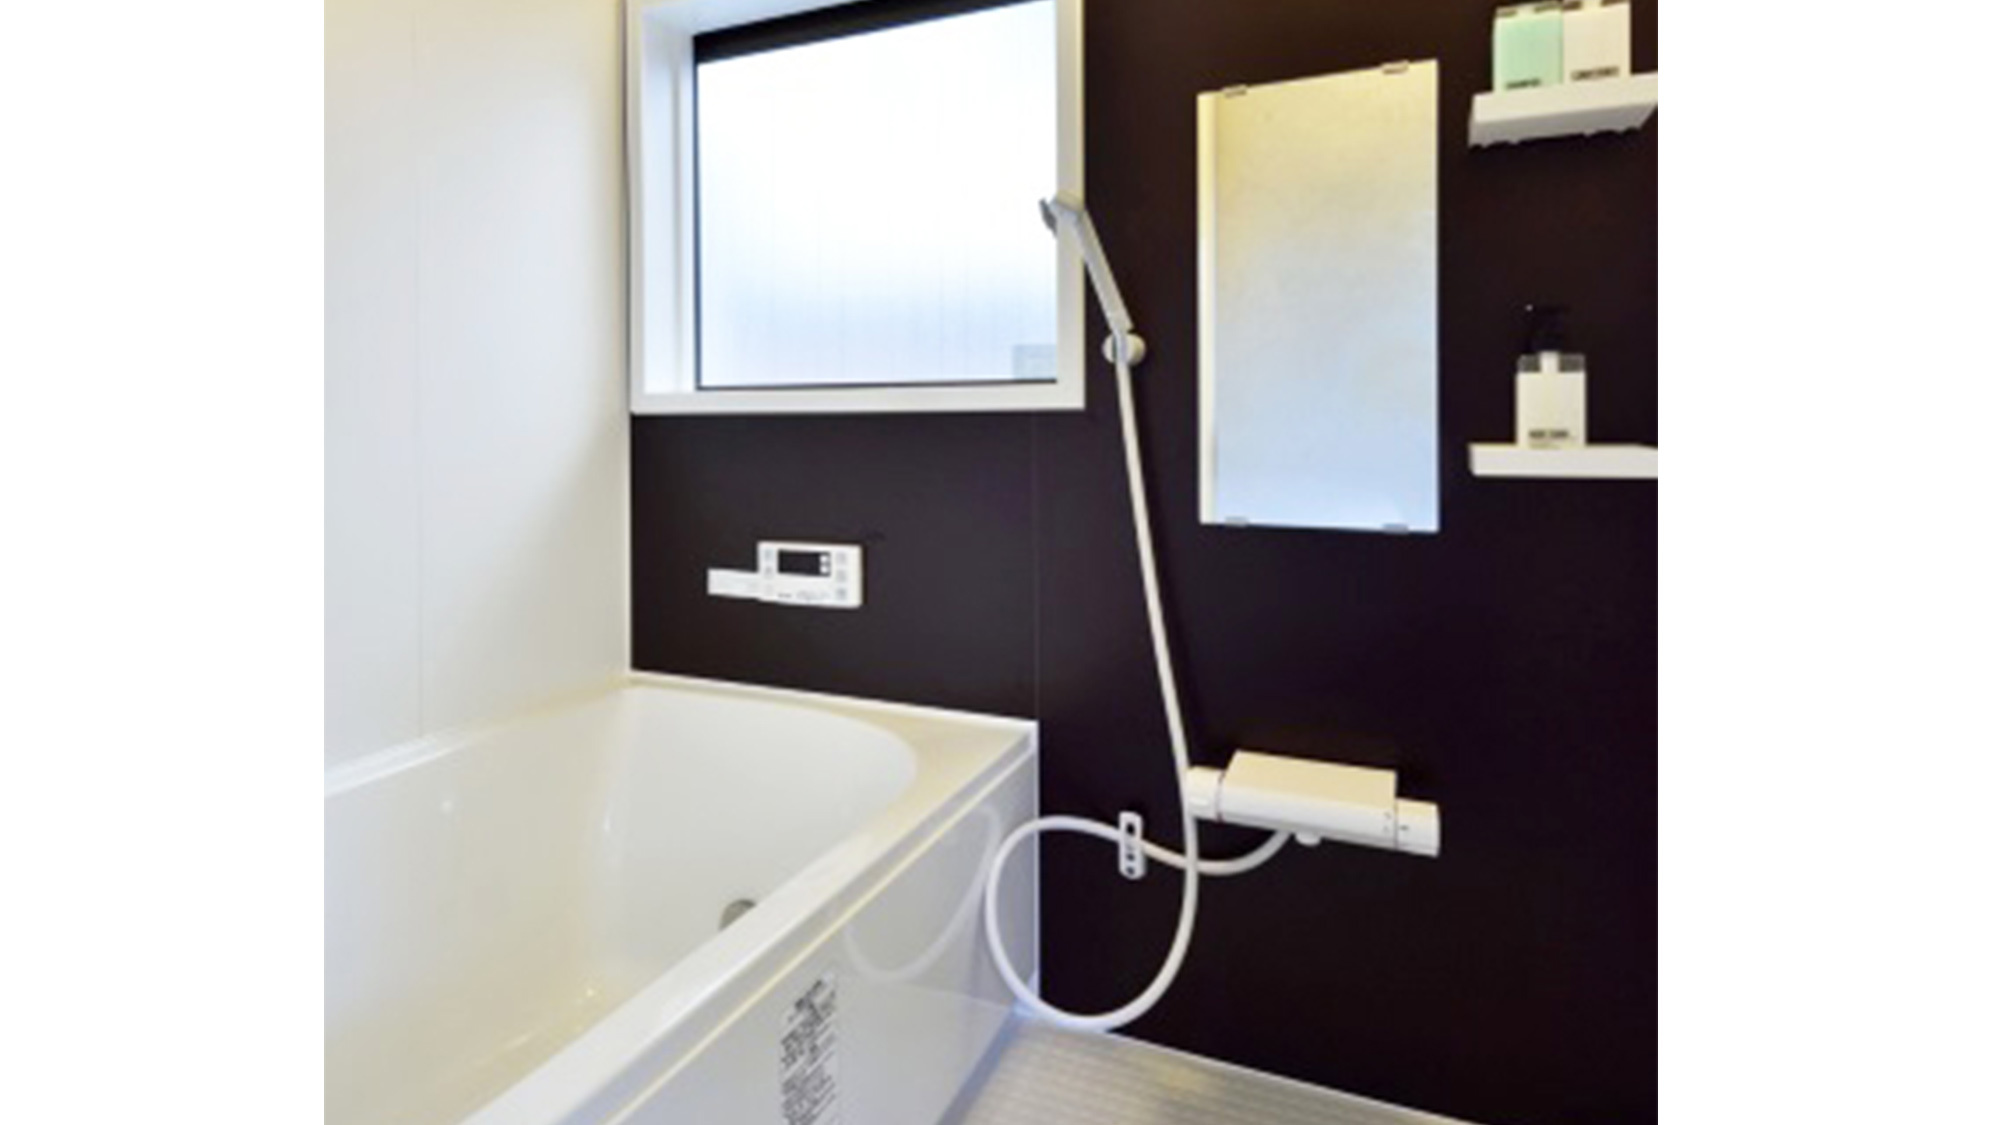 ・＜浴室＞ファインバブルシャワーが放出されるシャワーヘッドを採用